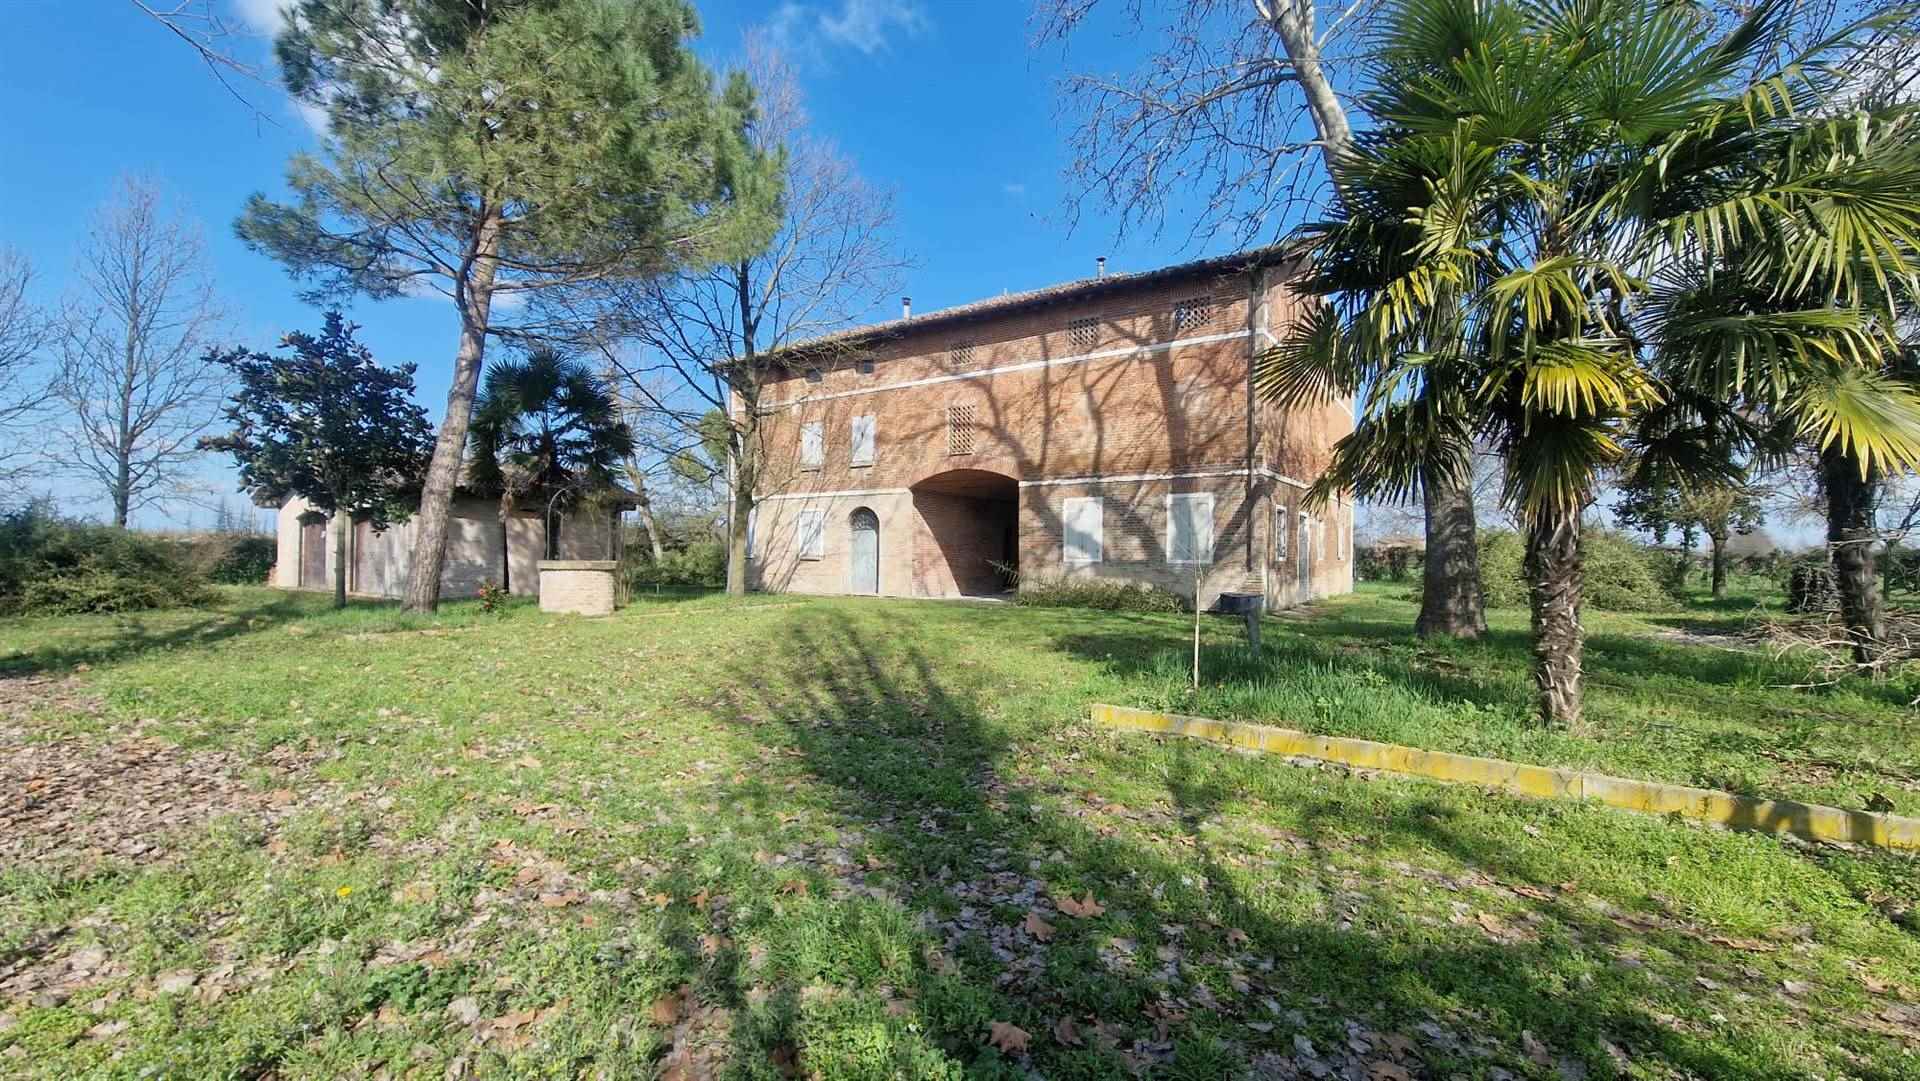 Correggio, zona Mandriolo: Ferretti Studio Immobiliare propone in vendita esclusivo casale con ampio parco di 3.000 mq ca. immerso nel verde e a pochi minuti dal centro del paese. La proprietà 